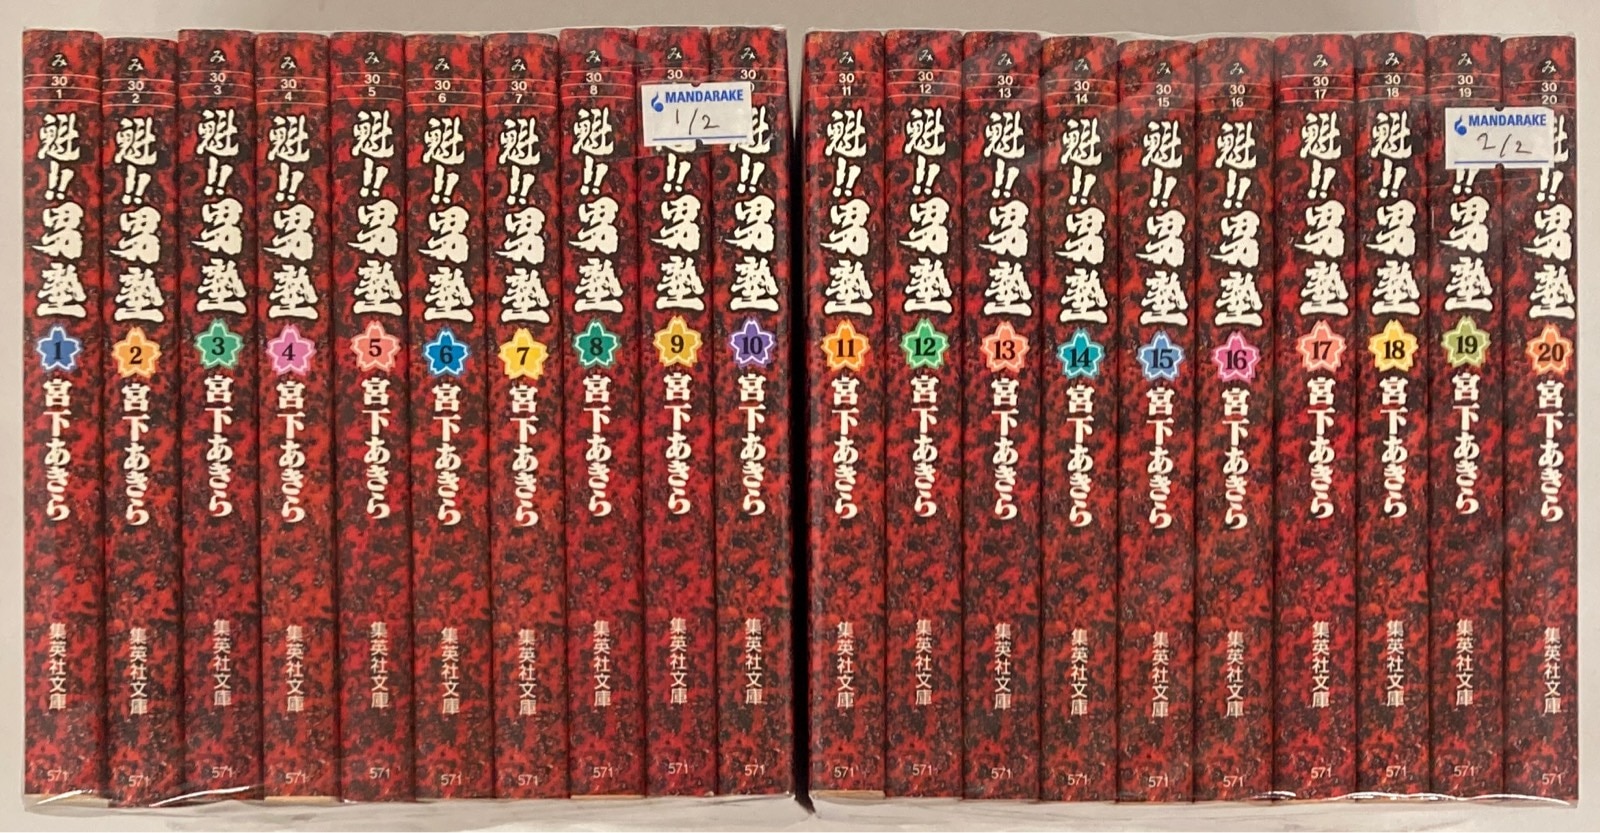 魁‼︎男塾　文庫版　全巻　全20巻セット